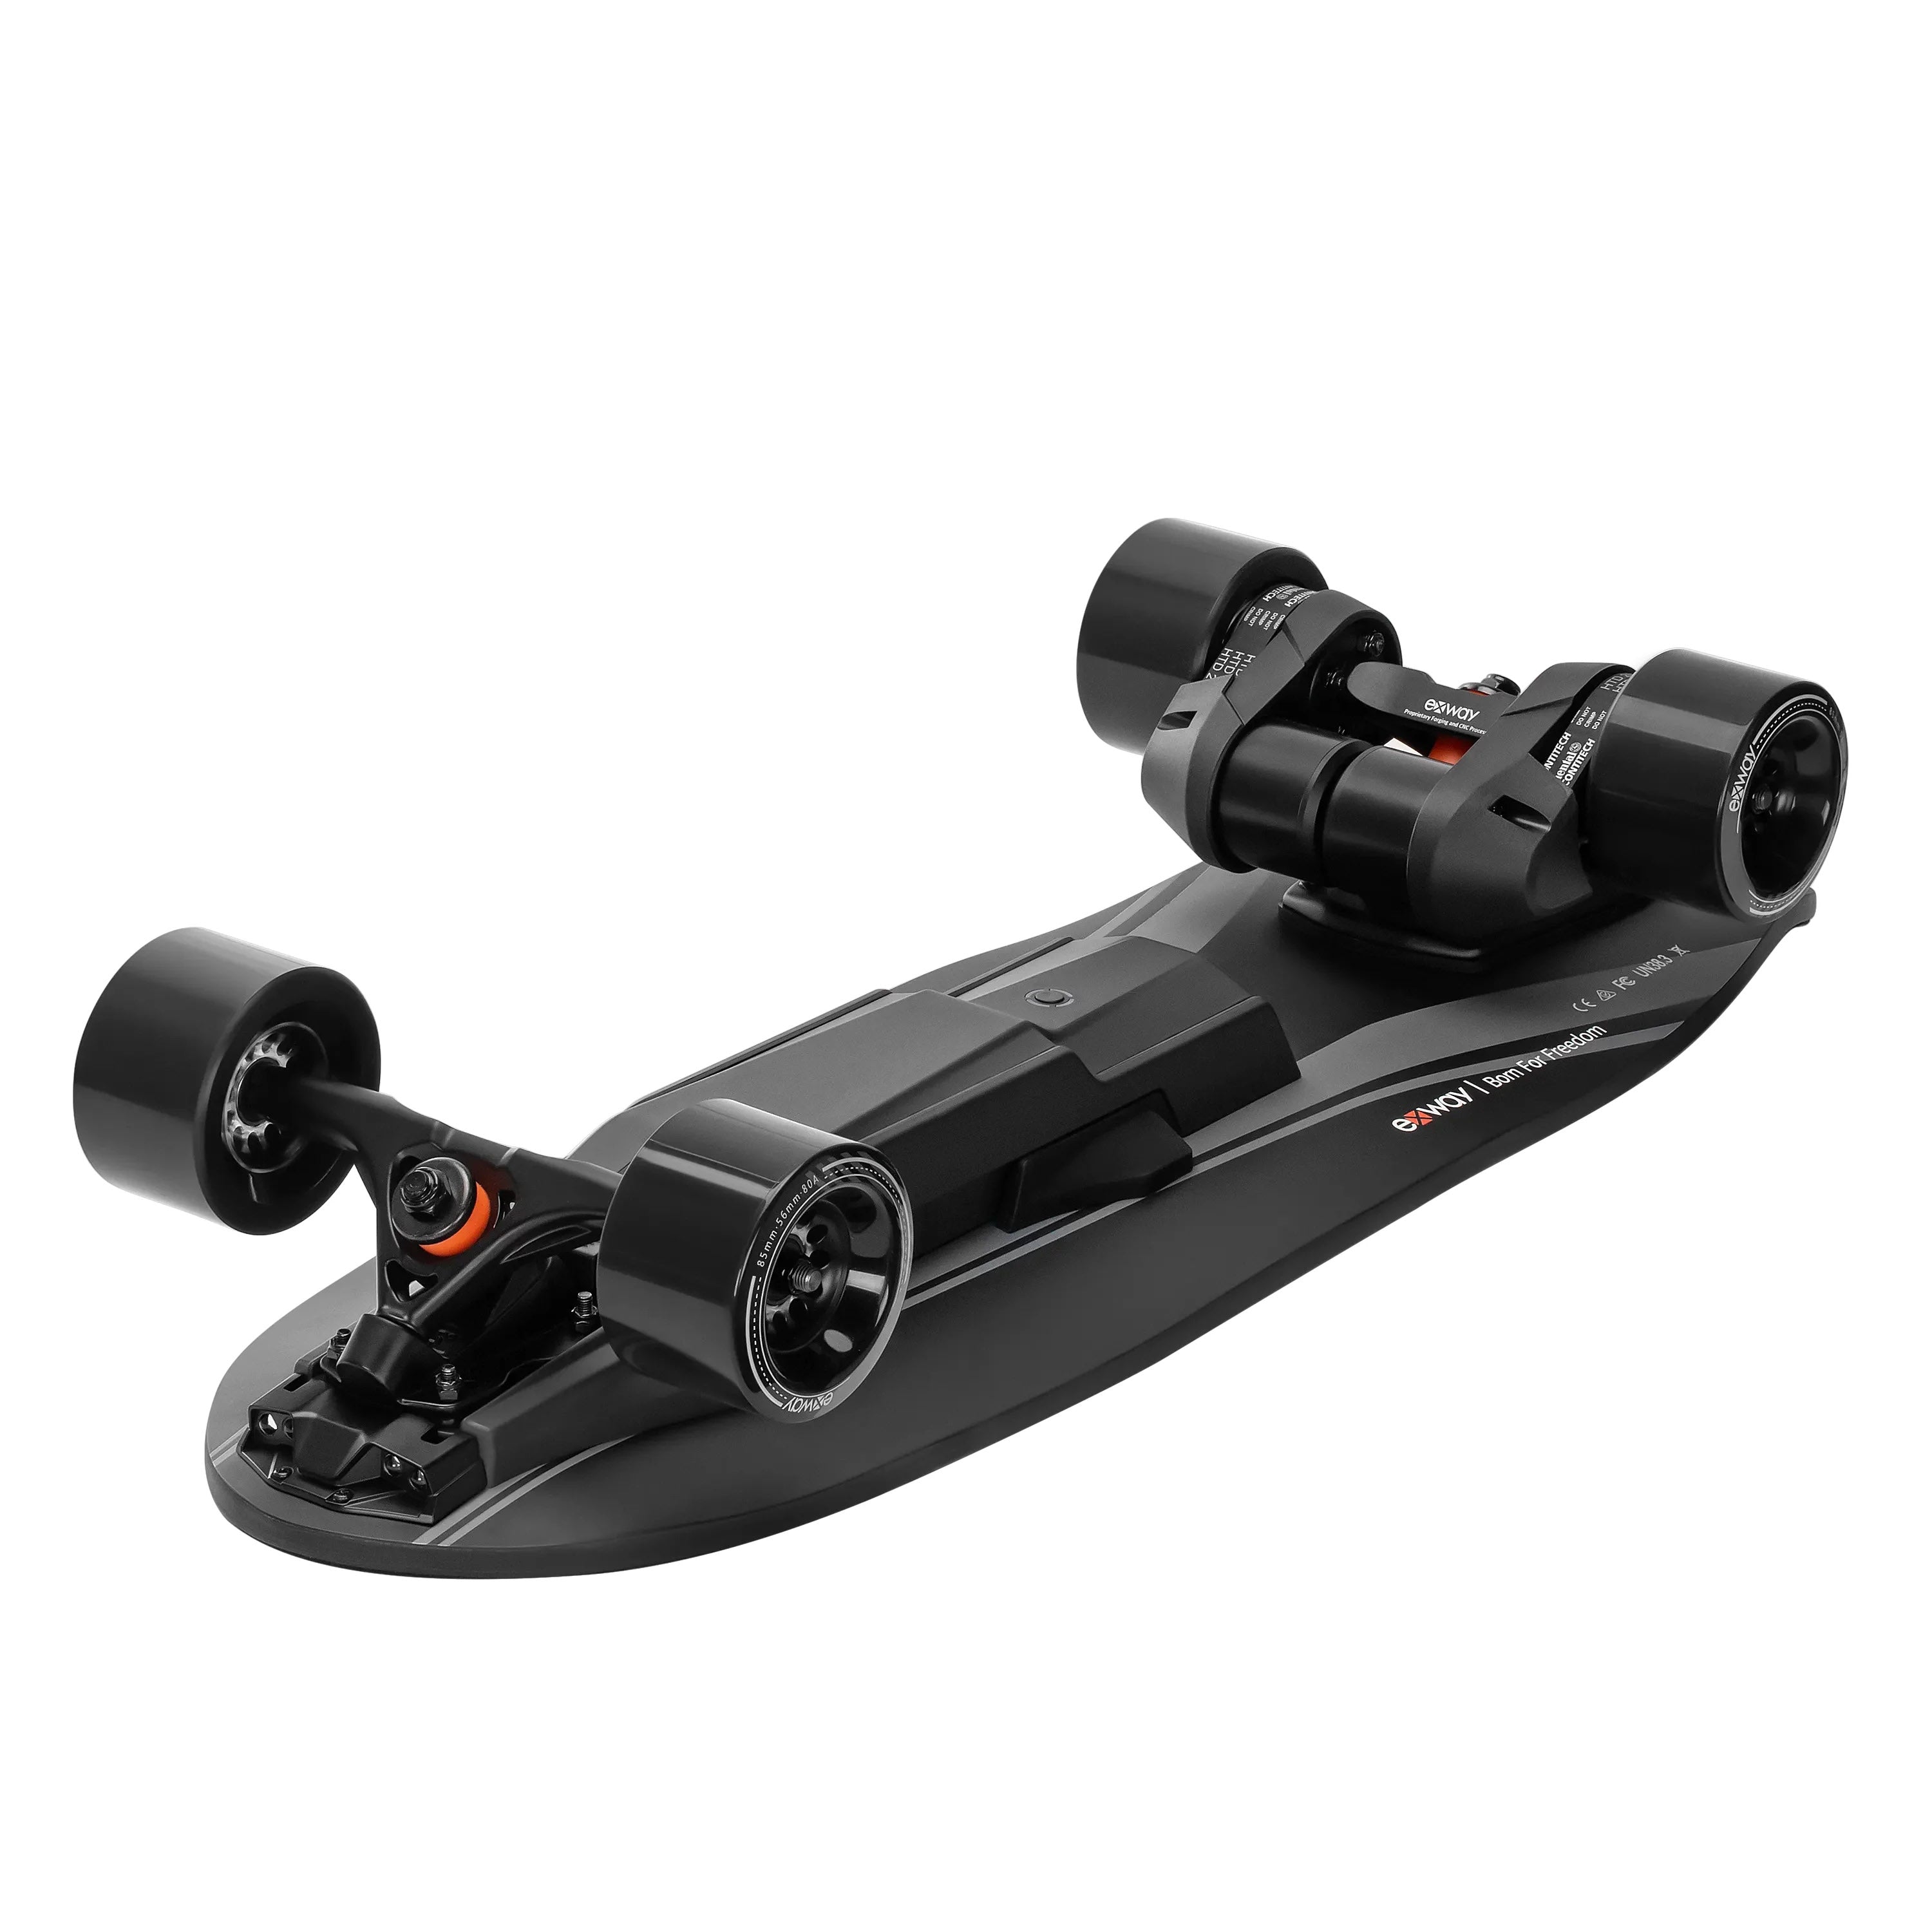 Exway Wave丨ベスト携帯可能な分解式電動スケートボード